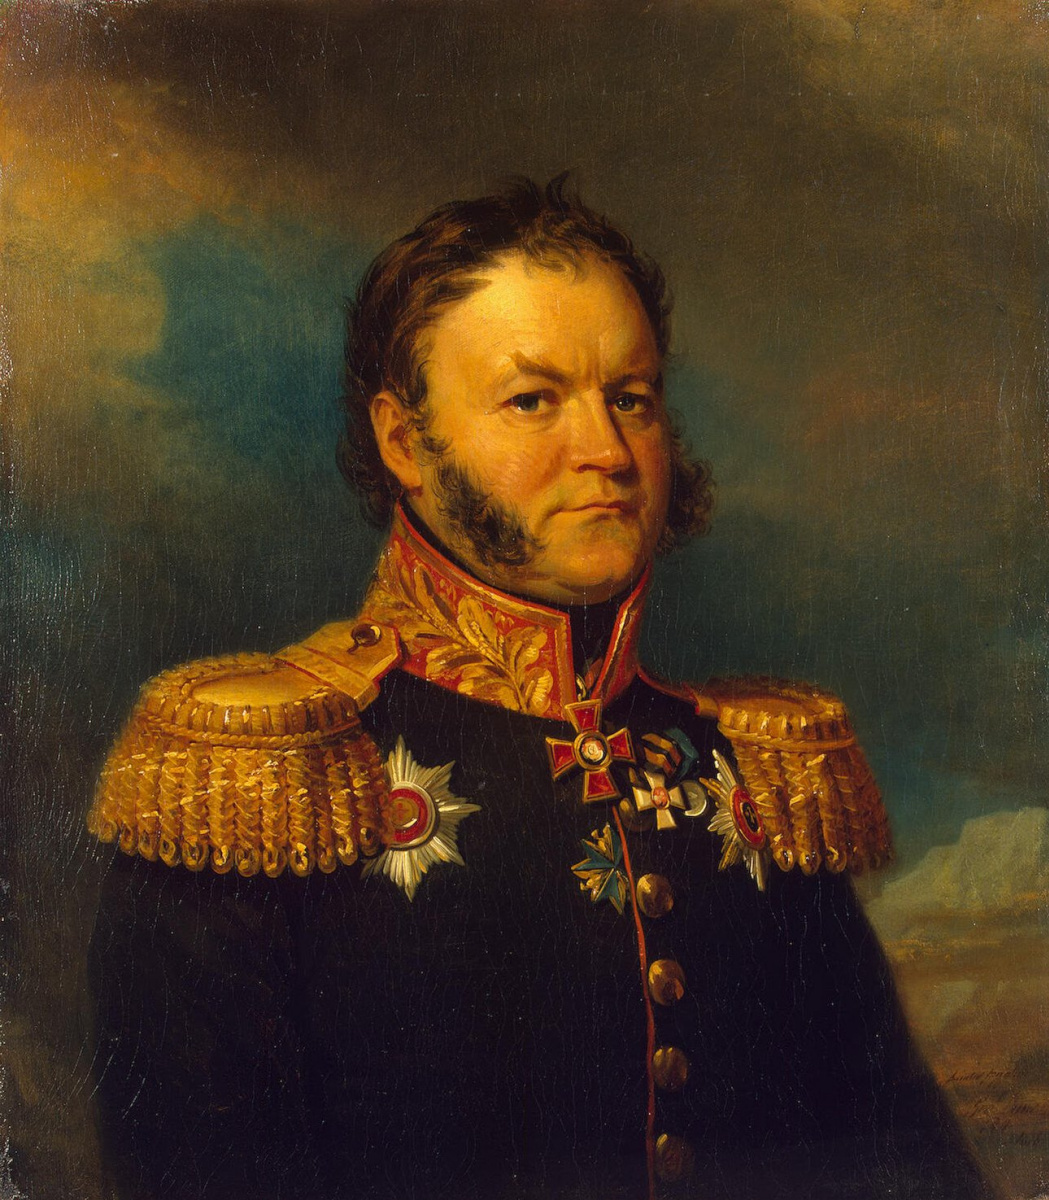 Вельяминов Иван Александрович (1771-1837)